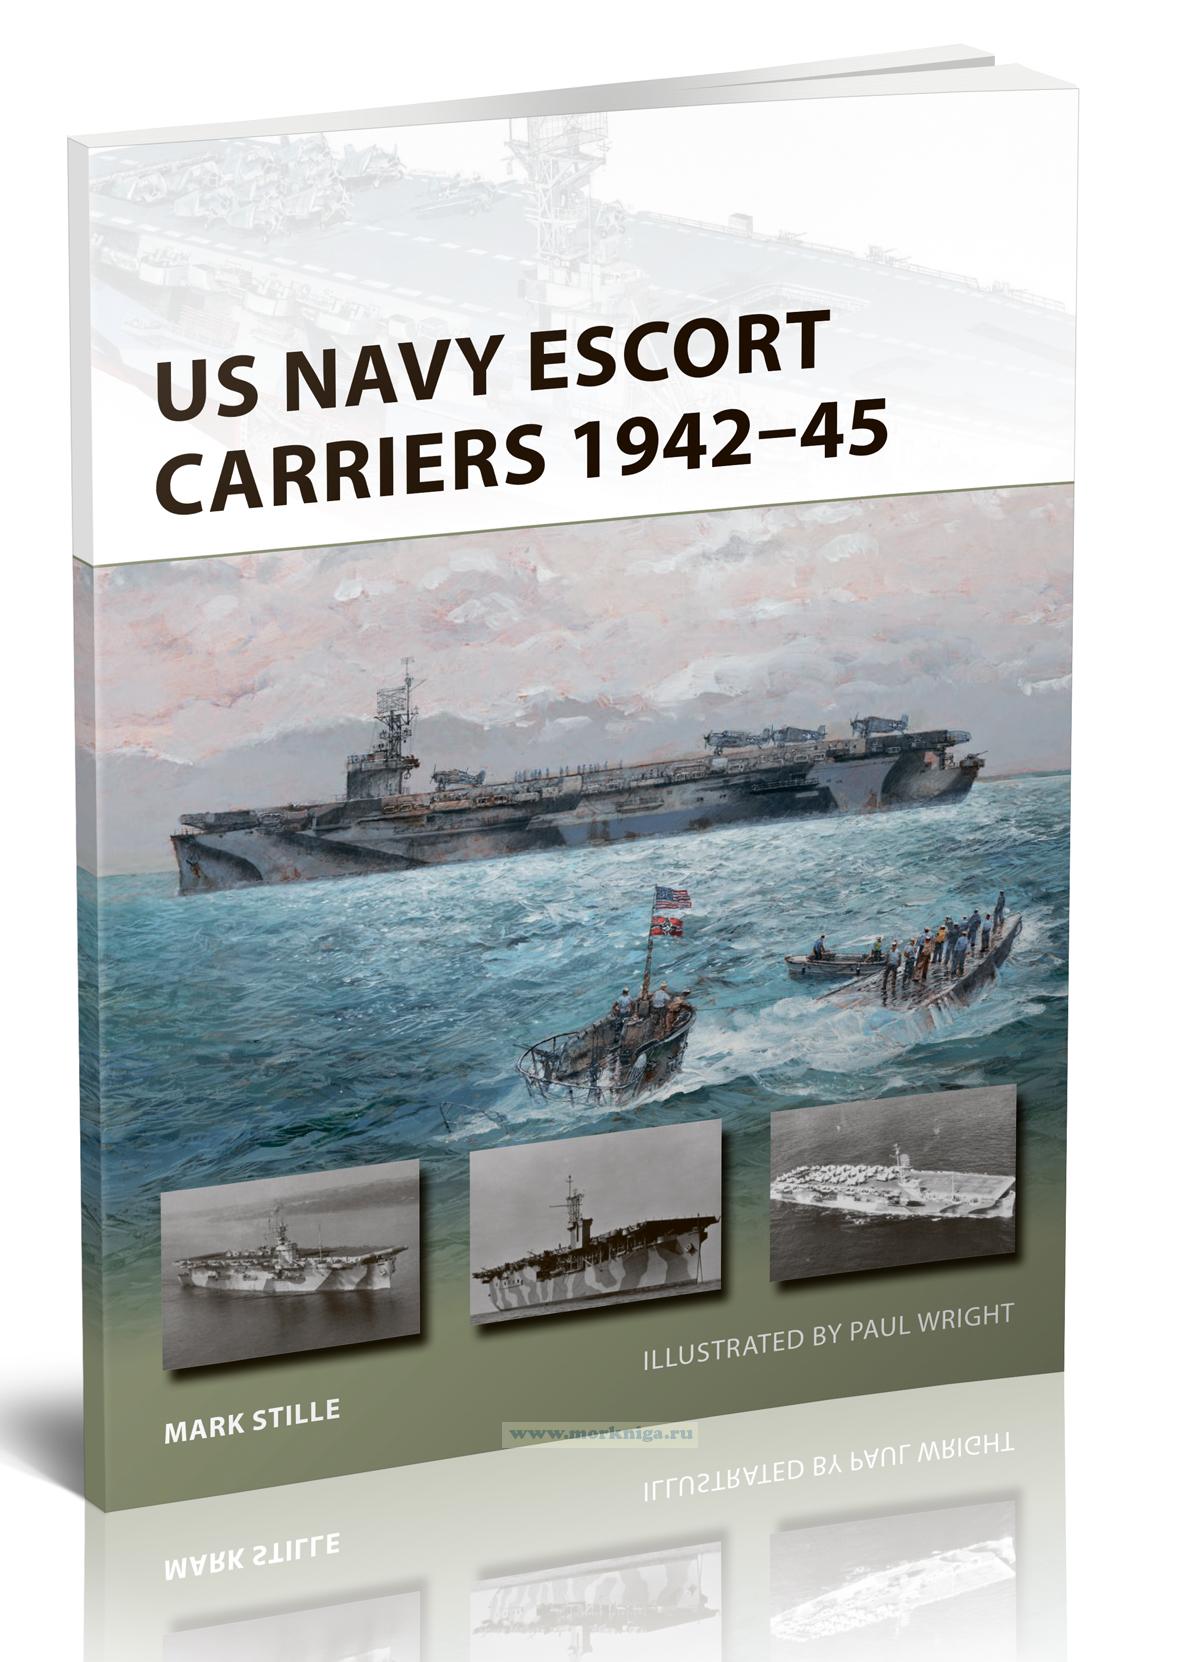 US Navy Escort Carriers 1942-45/Авианосцы сопровождения ВМС США 1942-45 гг.